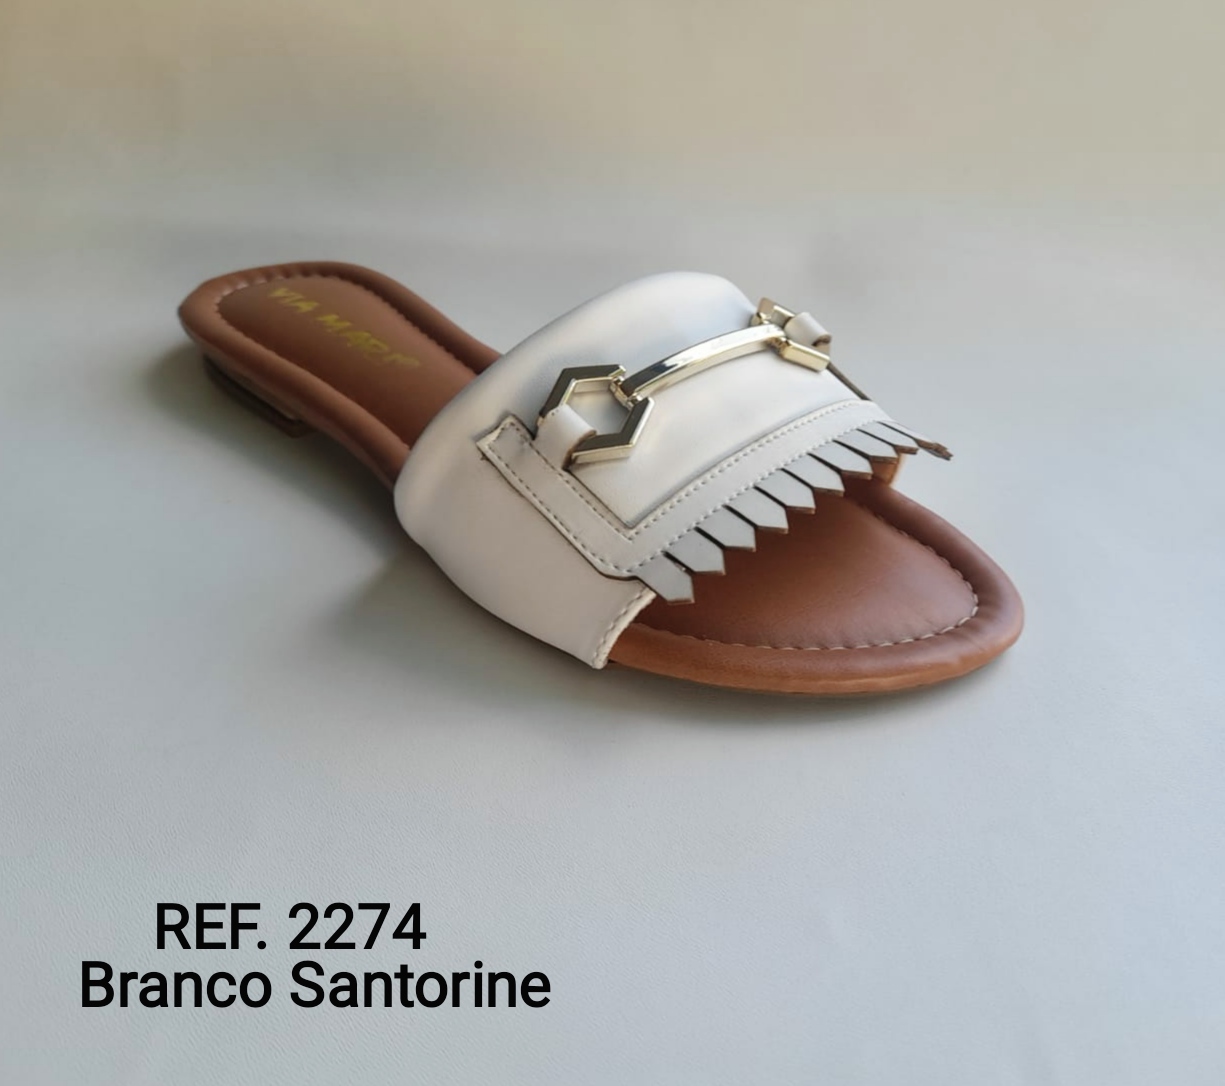 Ref. 2274 - Branco Santorine